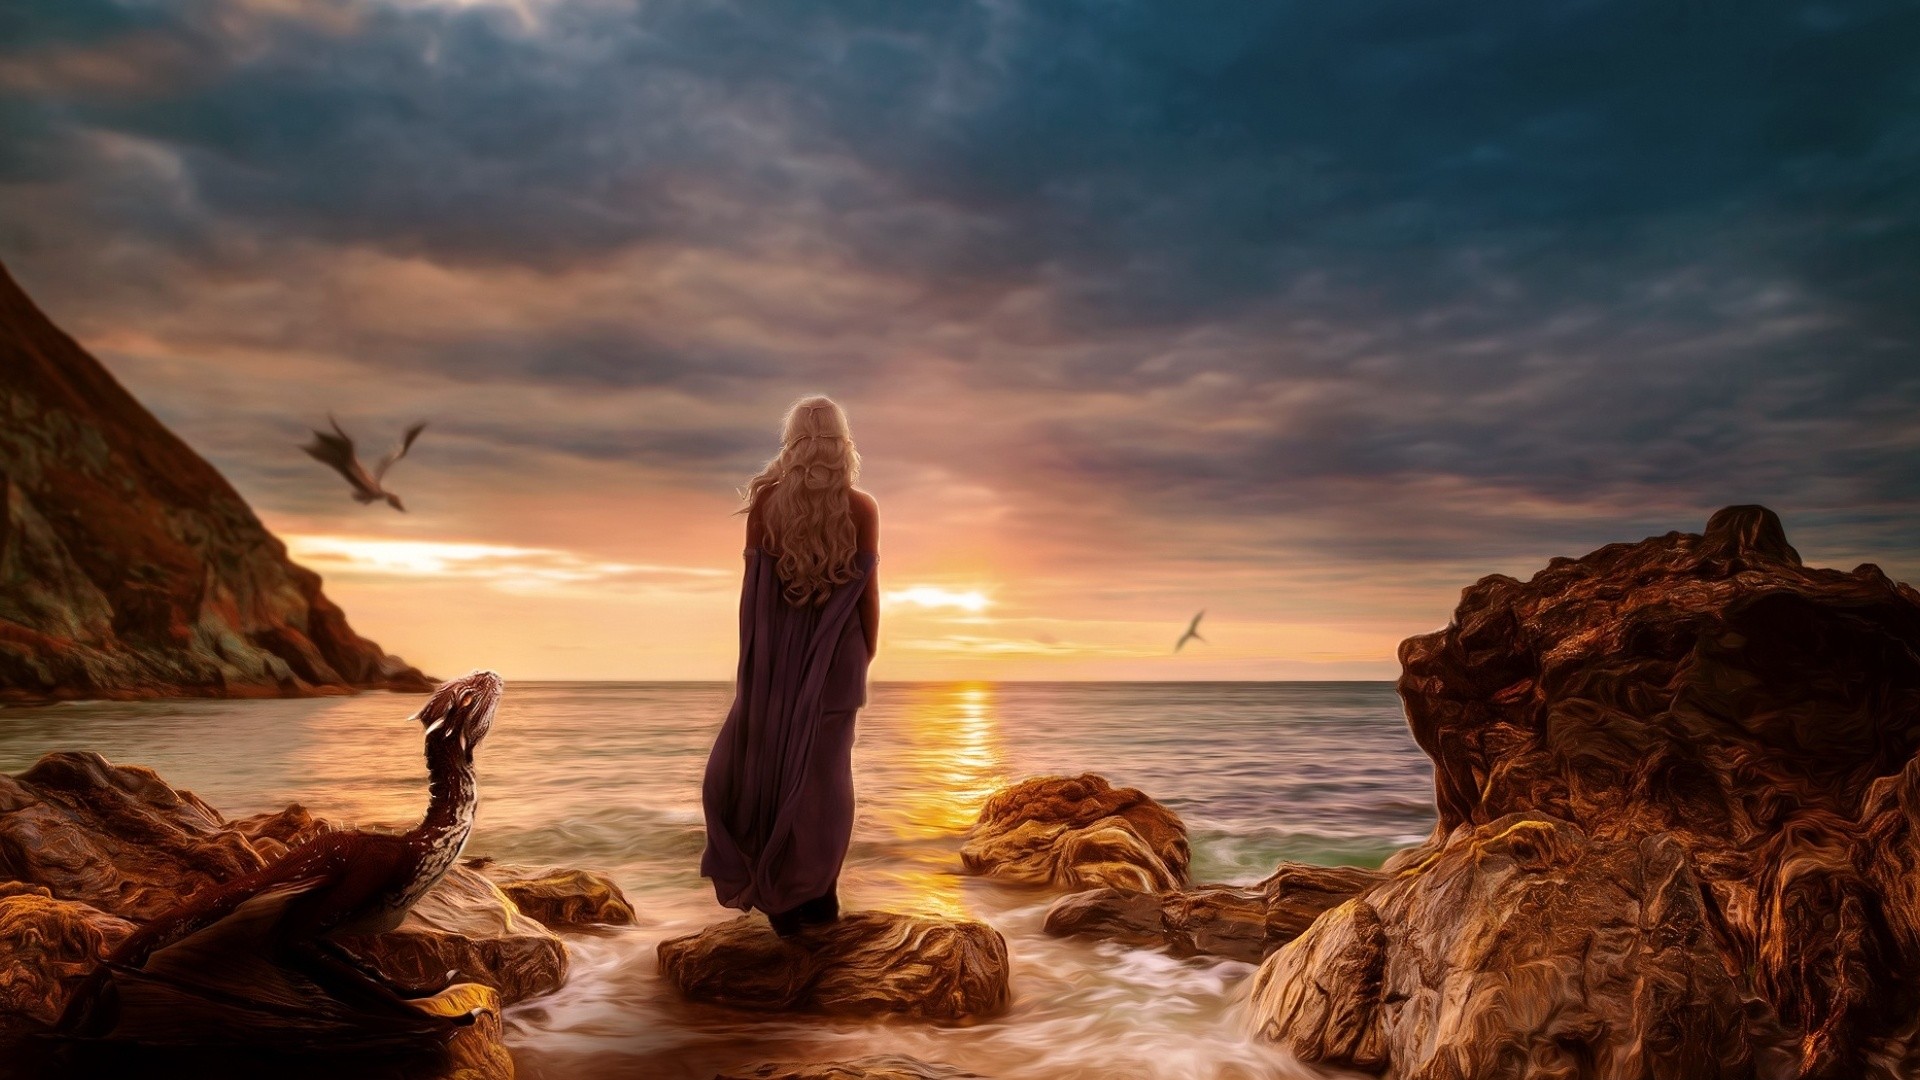 Daenerys Targaryen, Game of Thrones, Dragon, Sea, Sunset Wallpaper